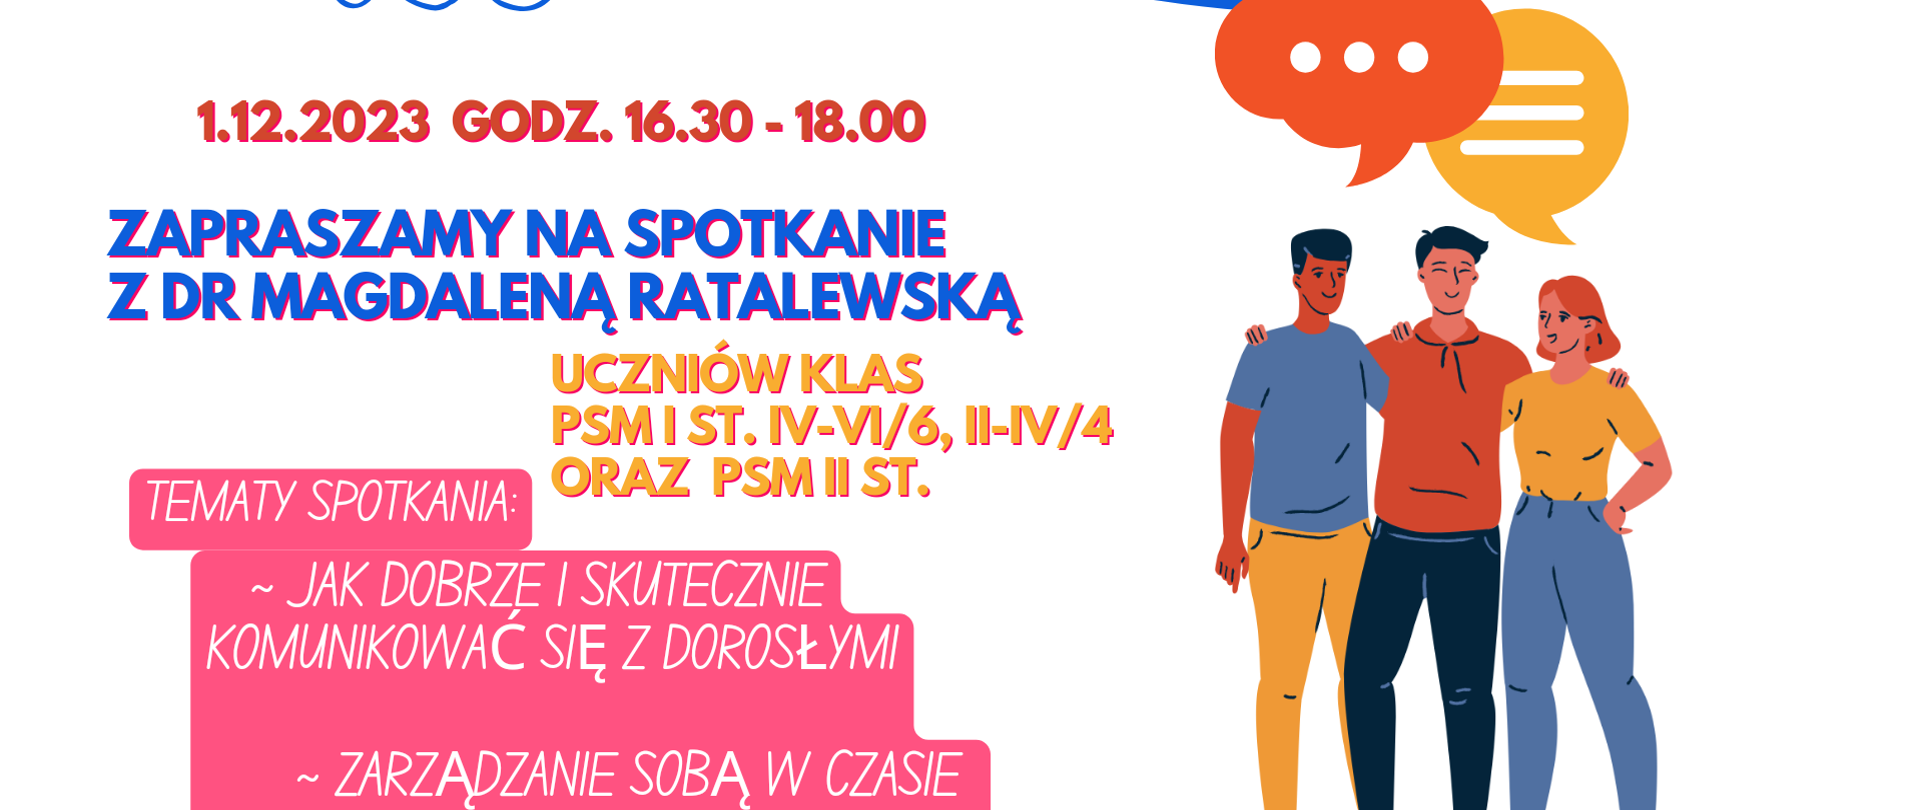 Plakat informujący o spotkaniu dla uczniów PSM I i II stopnia z dr Magdaleną Ratalewską dnia 1 grudnia 2023 od godziny 16.30 do 18.00.